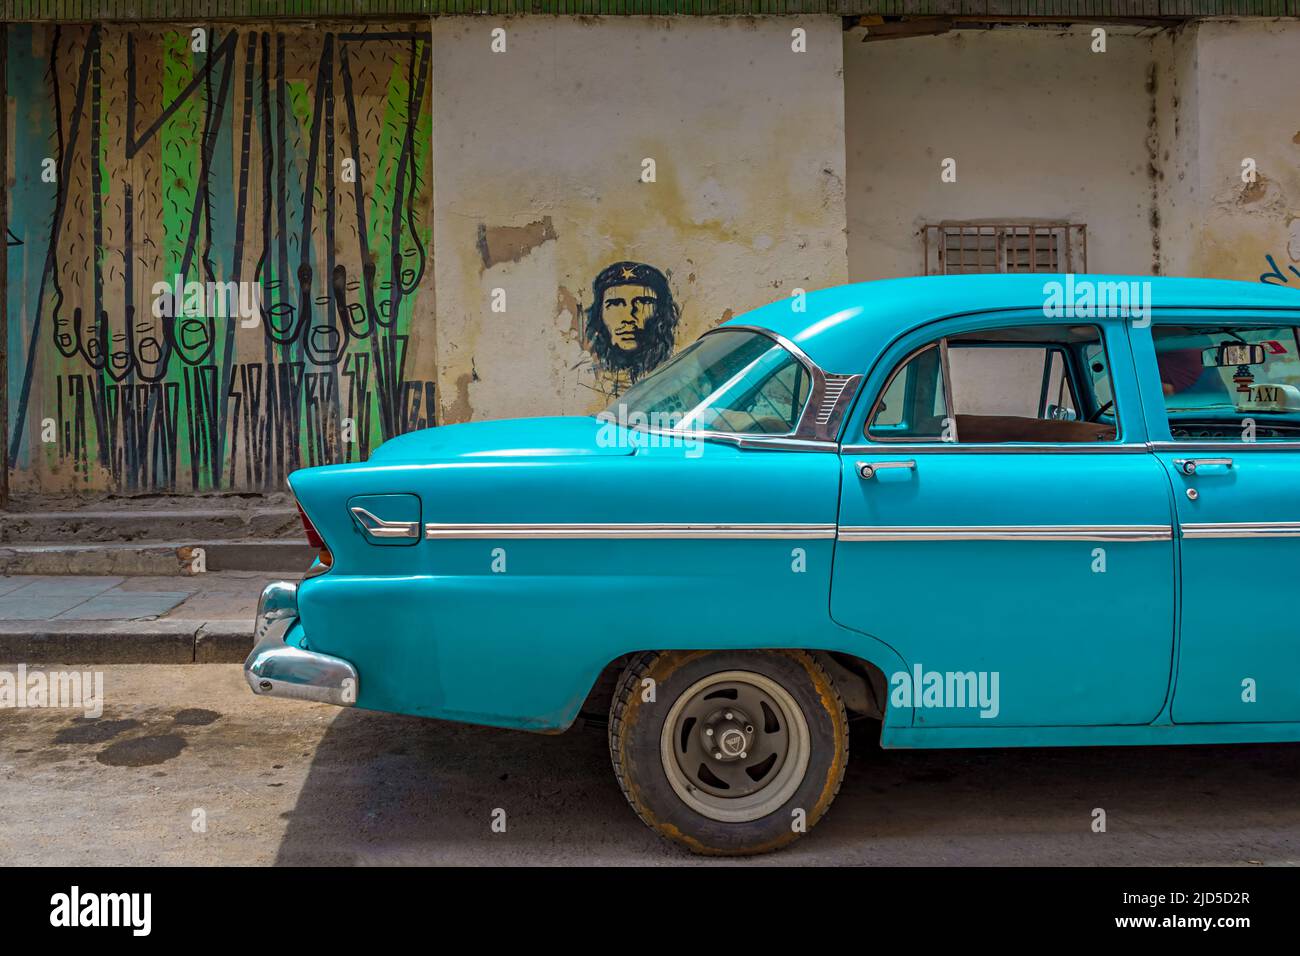 Une voiture bleue d'époque avec une fresque du Che Guevara en arrière-plan dans la vieille Havane, Cuba Banque D'Images